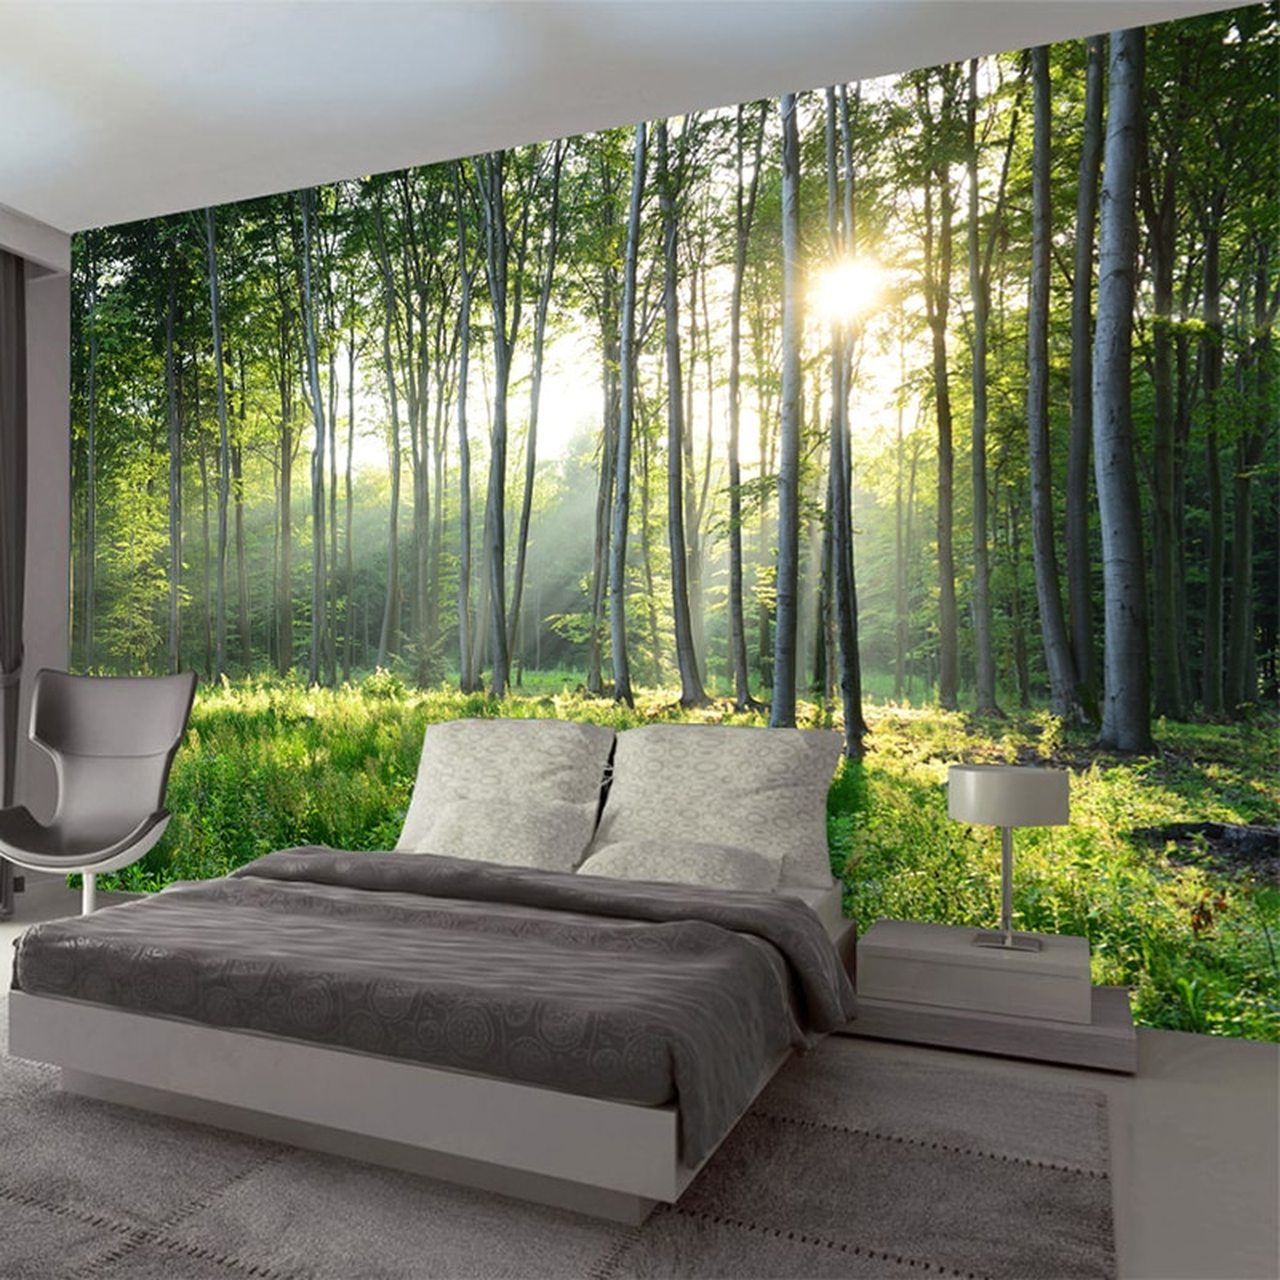 grüne tapete wohnzimmer,natur,natürliche landschaft,wand,baum,möbel